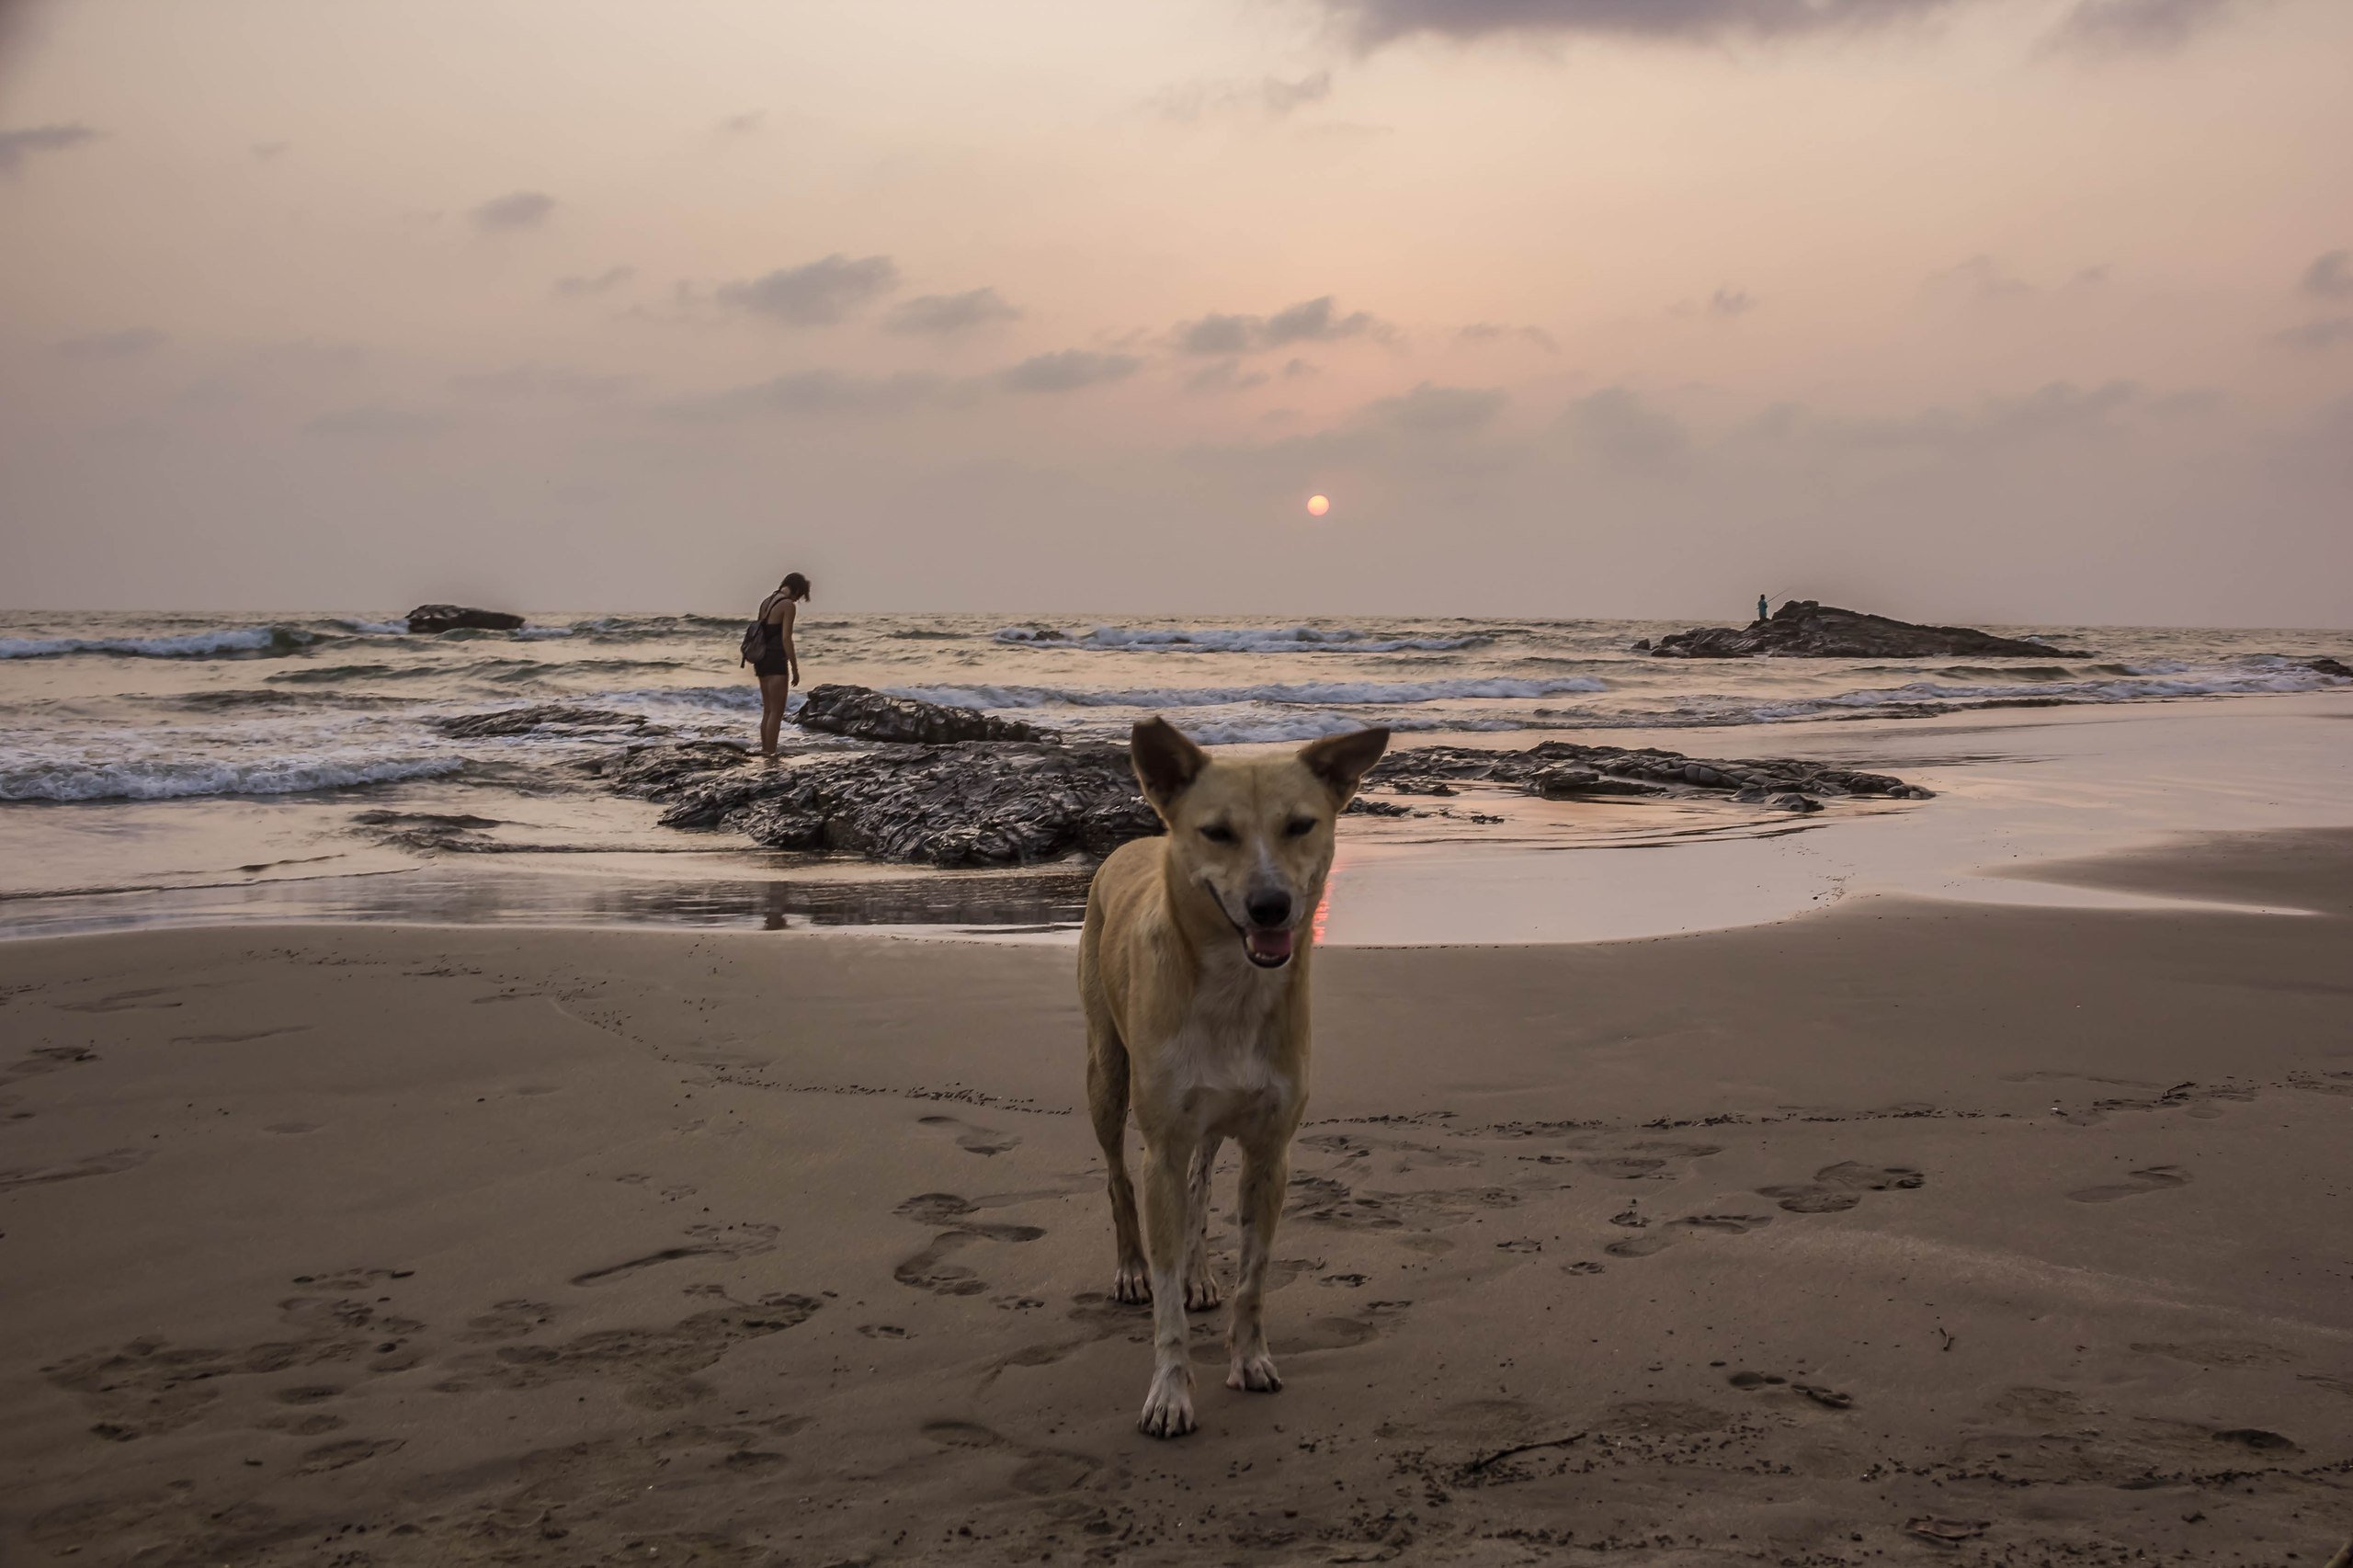 Goa. Evening beach story... #India #Goa # - 4